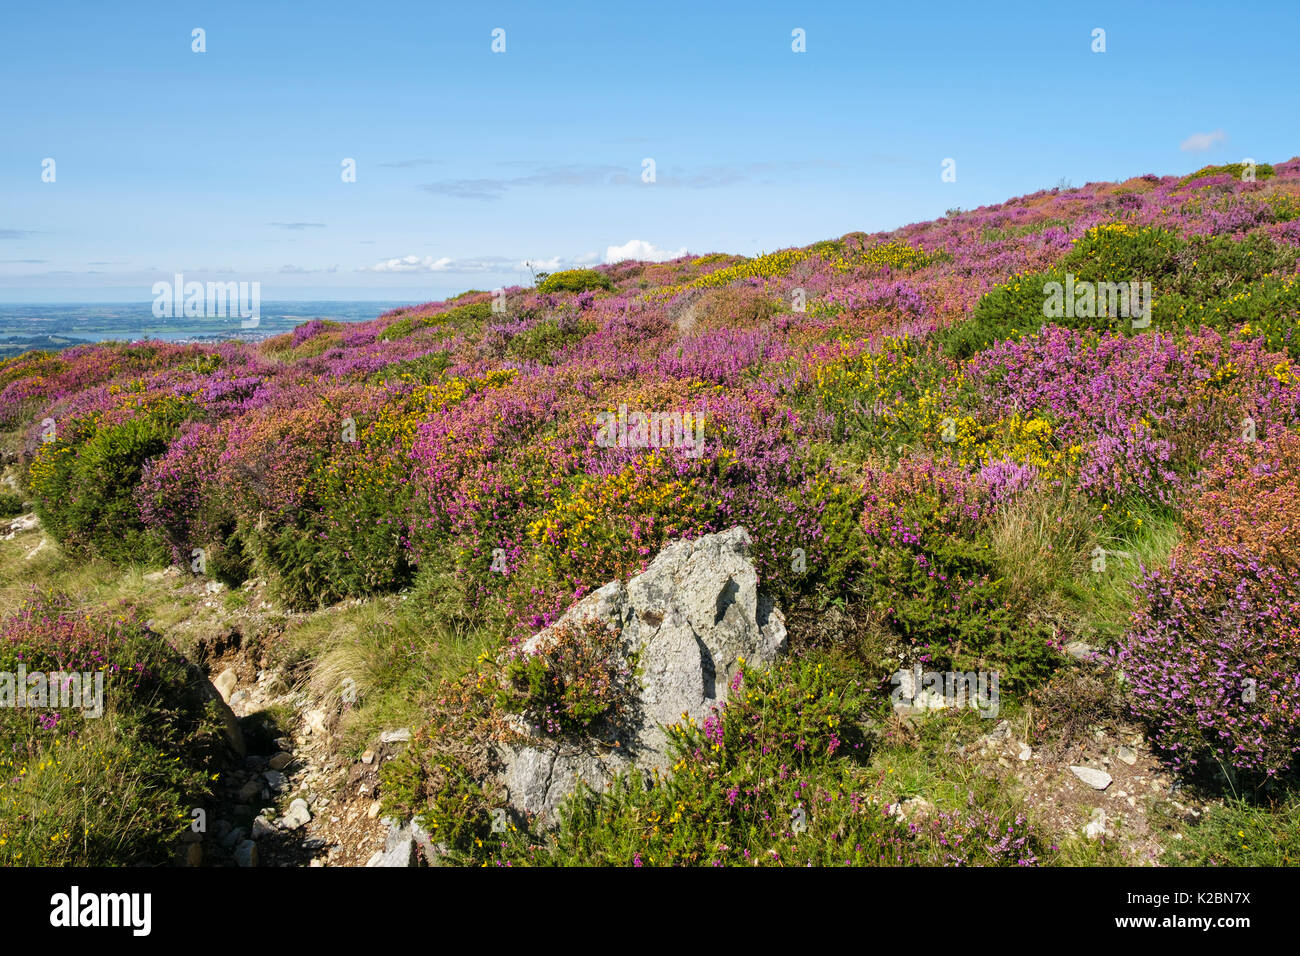 Moel Smytho colline de la lande couverte de fleurs chiné et Gorse à la fin de l'été. Waunfawr, Caernarfon, Gwynedd, pays de Galles, Royaume-Uni, Grande-Bretagne Banque D'Images